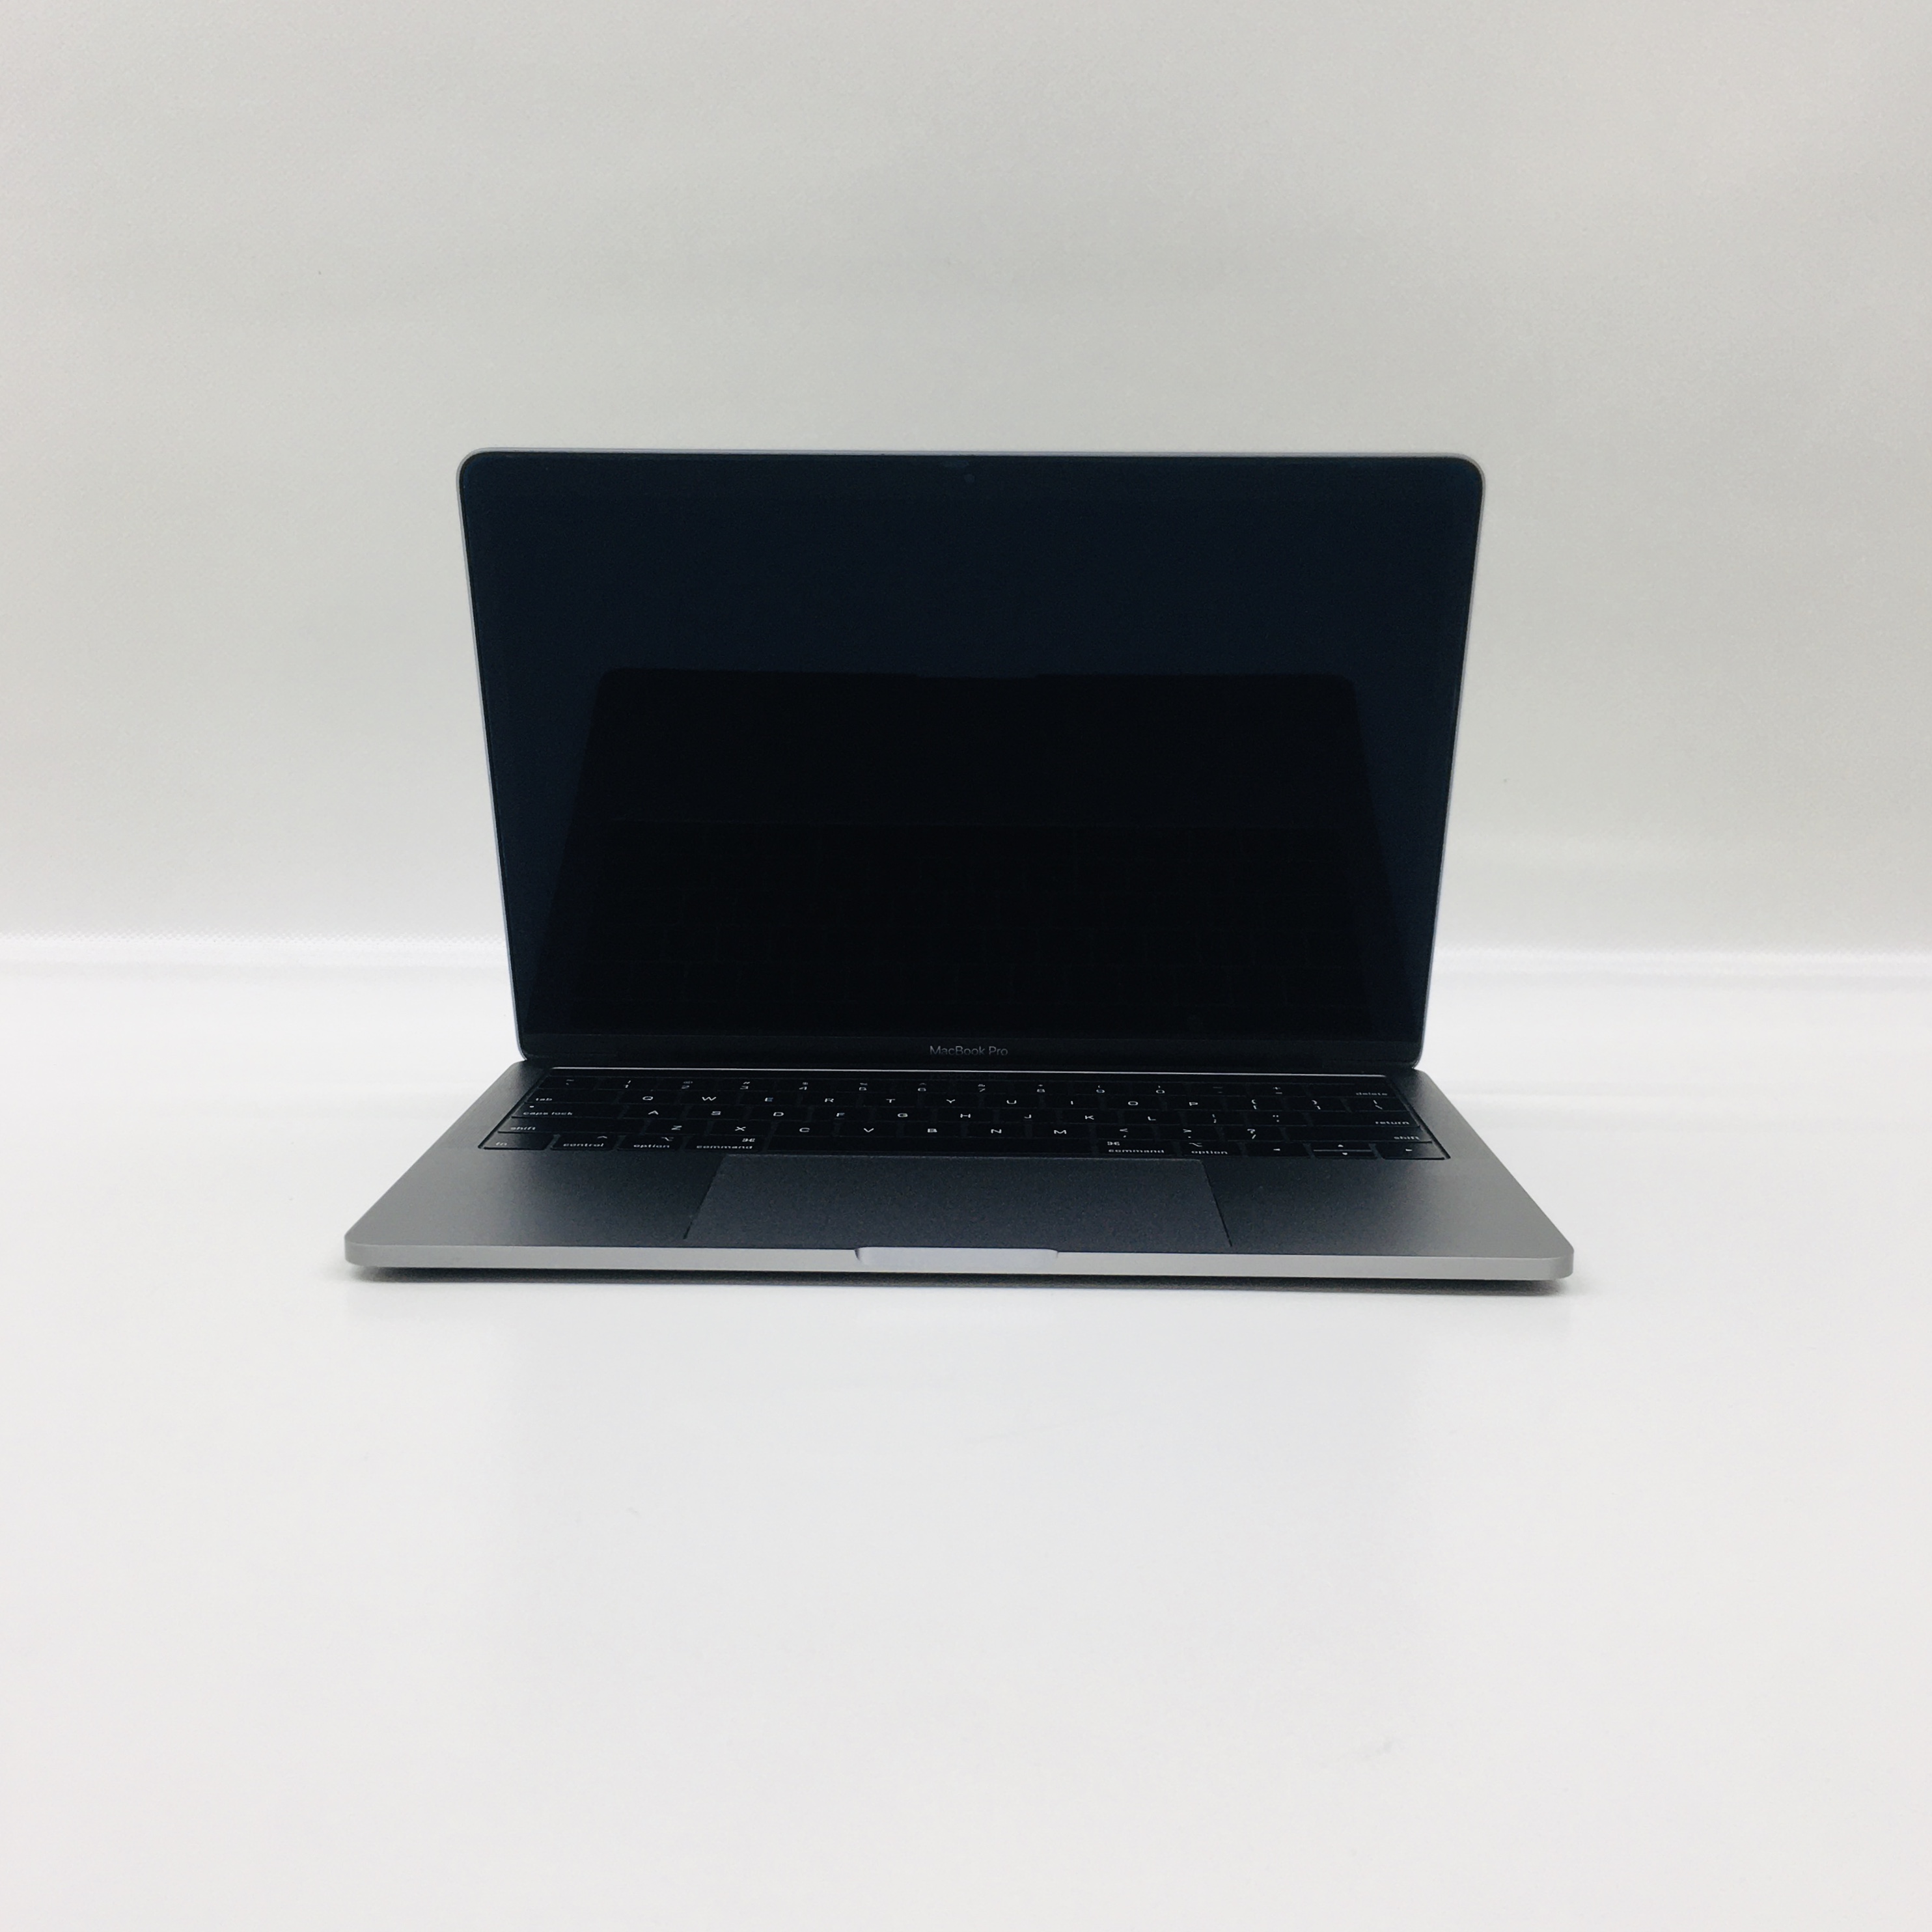 MacBook Pro 13" 4TBT Mid 2019 (Intel Quad-Core i5 2.4 GHz 8 GB RAM 256 GB SSD), Space Gray, Intel Quad-Core i5 2.4 GHz, 8 GB RAM, 256 GB SSD, image 1